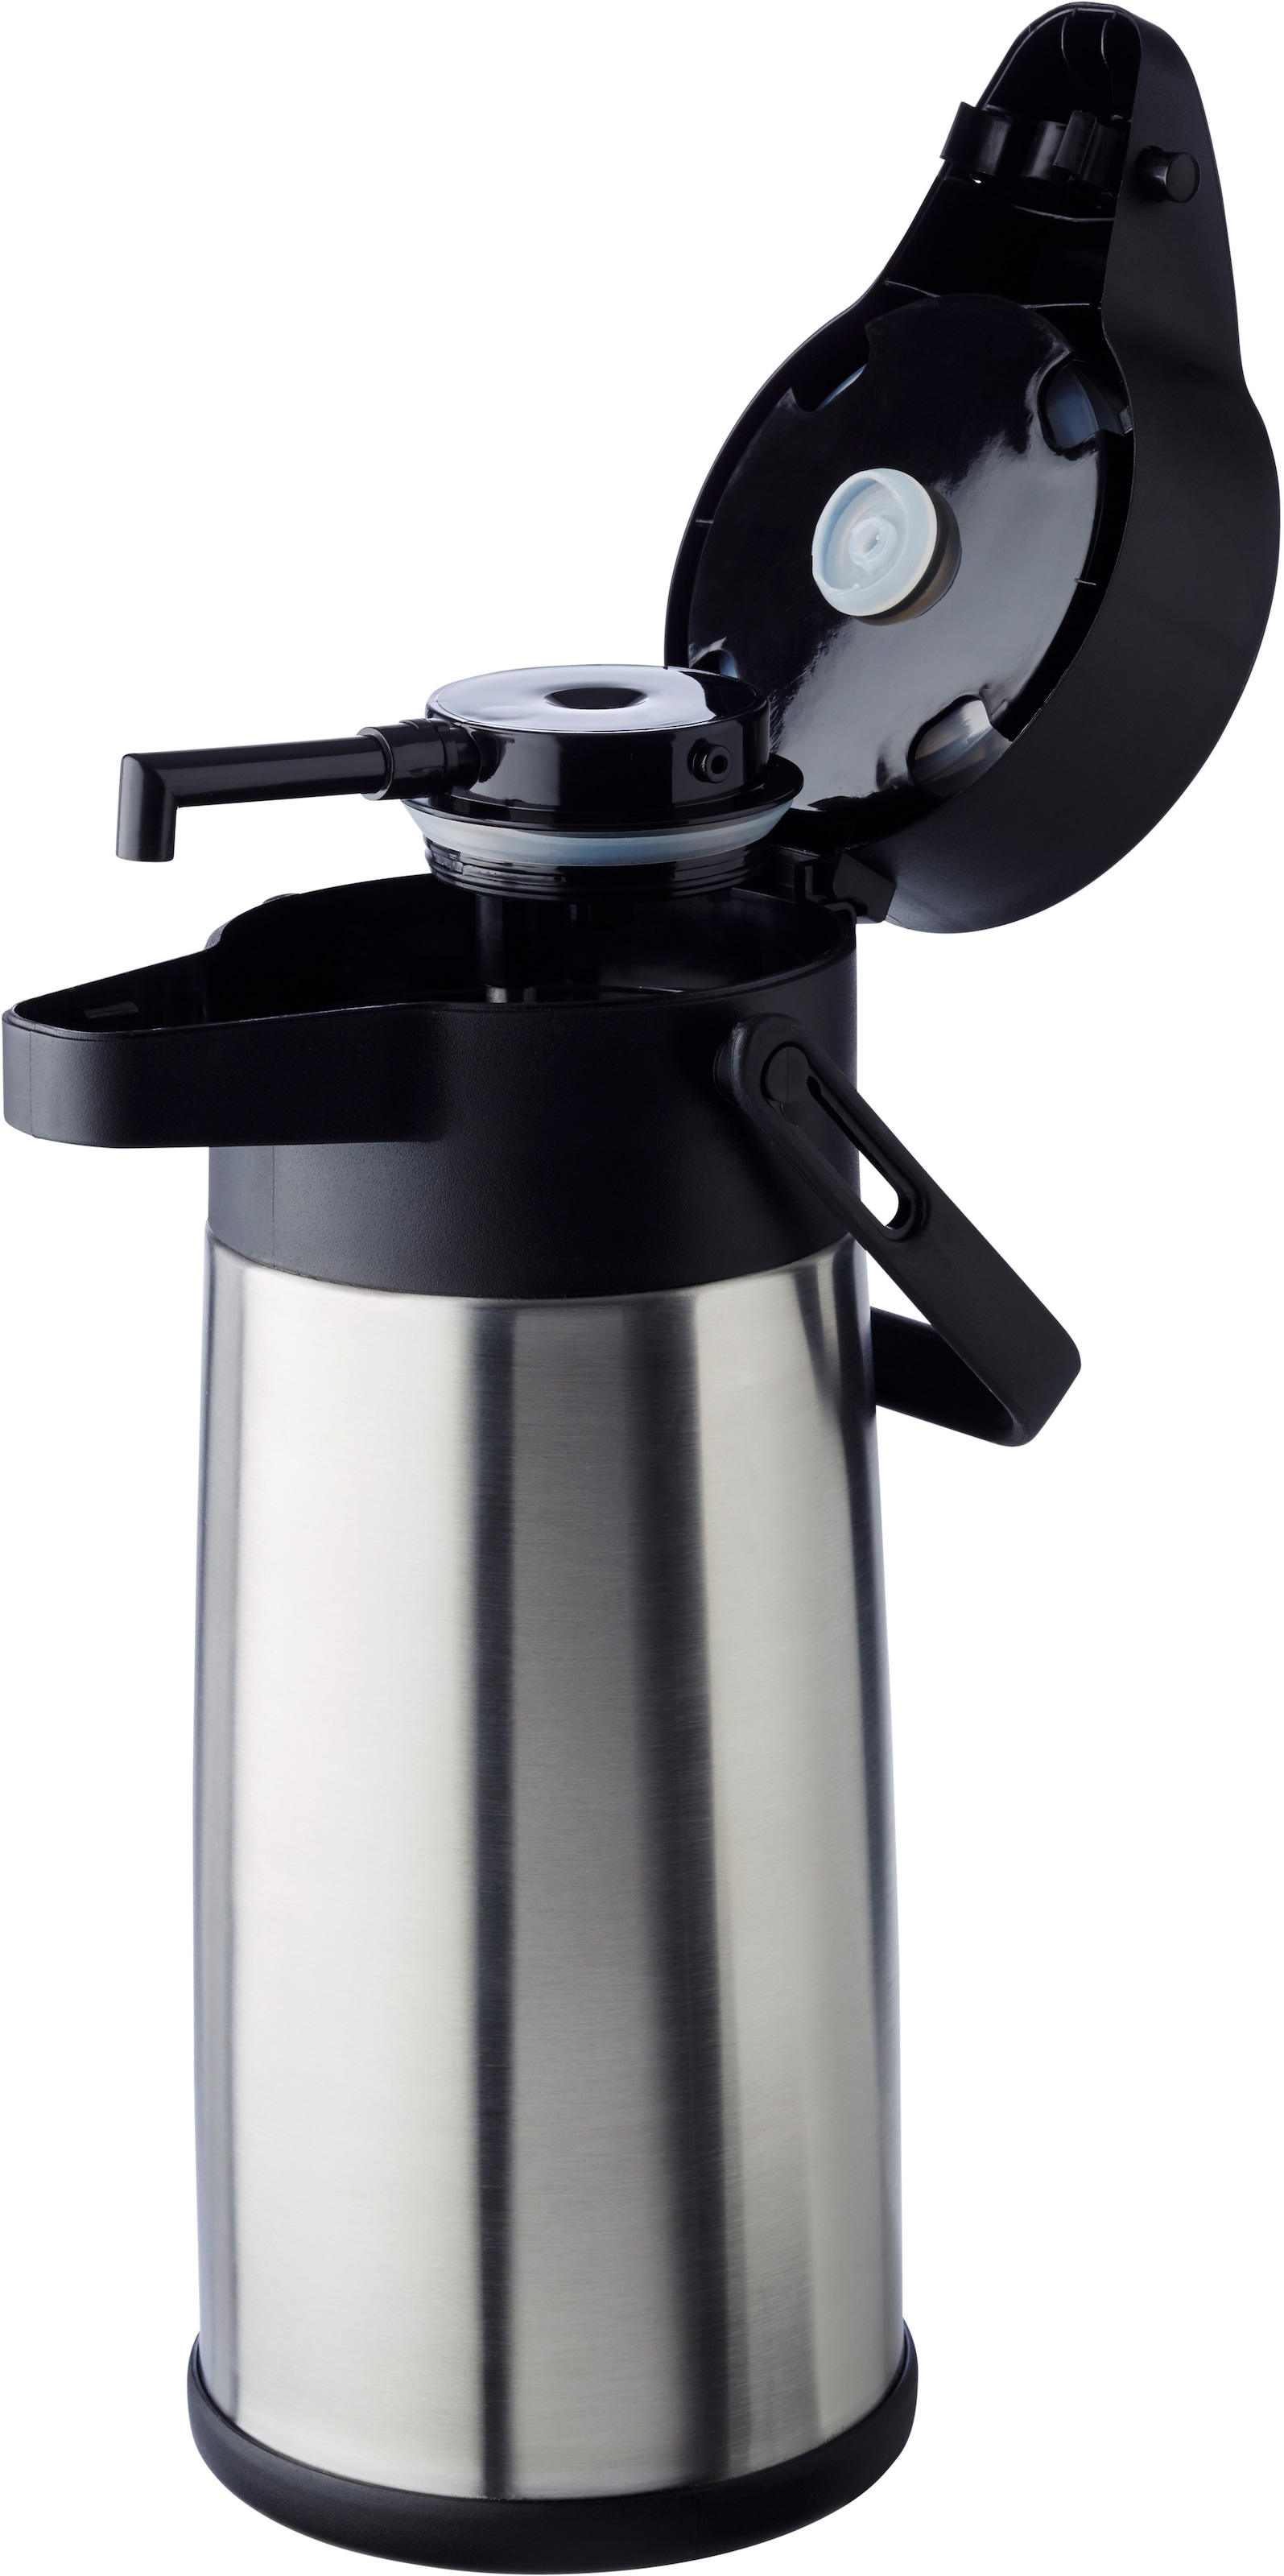 APS Pump-Isolierkanne »Budget«, 2,2 l, Dreh-Pumpknopf, für bis zu 17 Tassen Kaffee, doppelwandige Isolierung